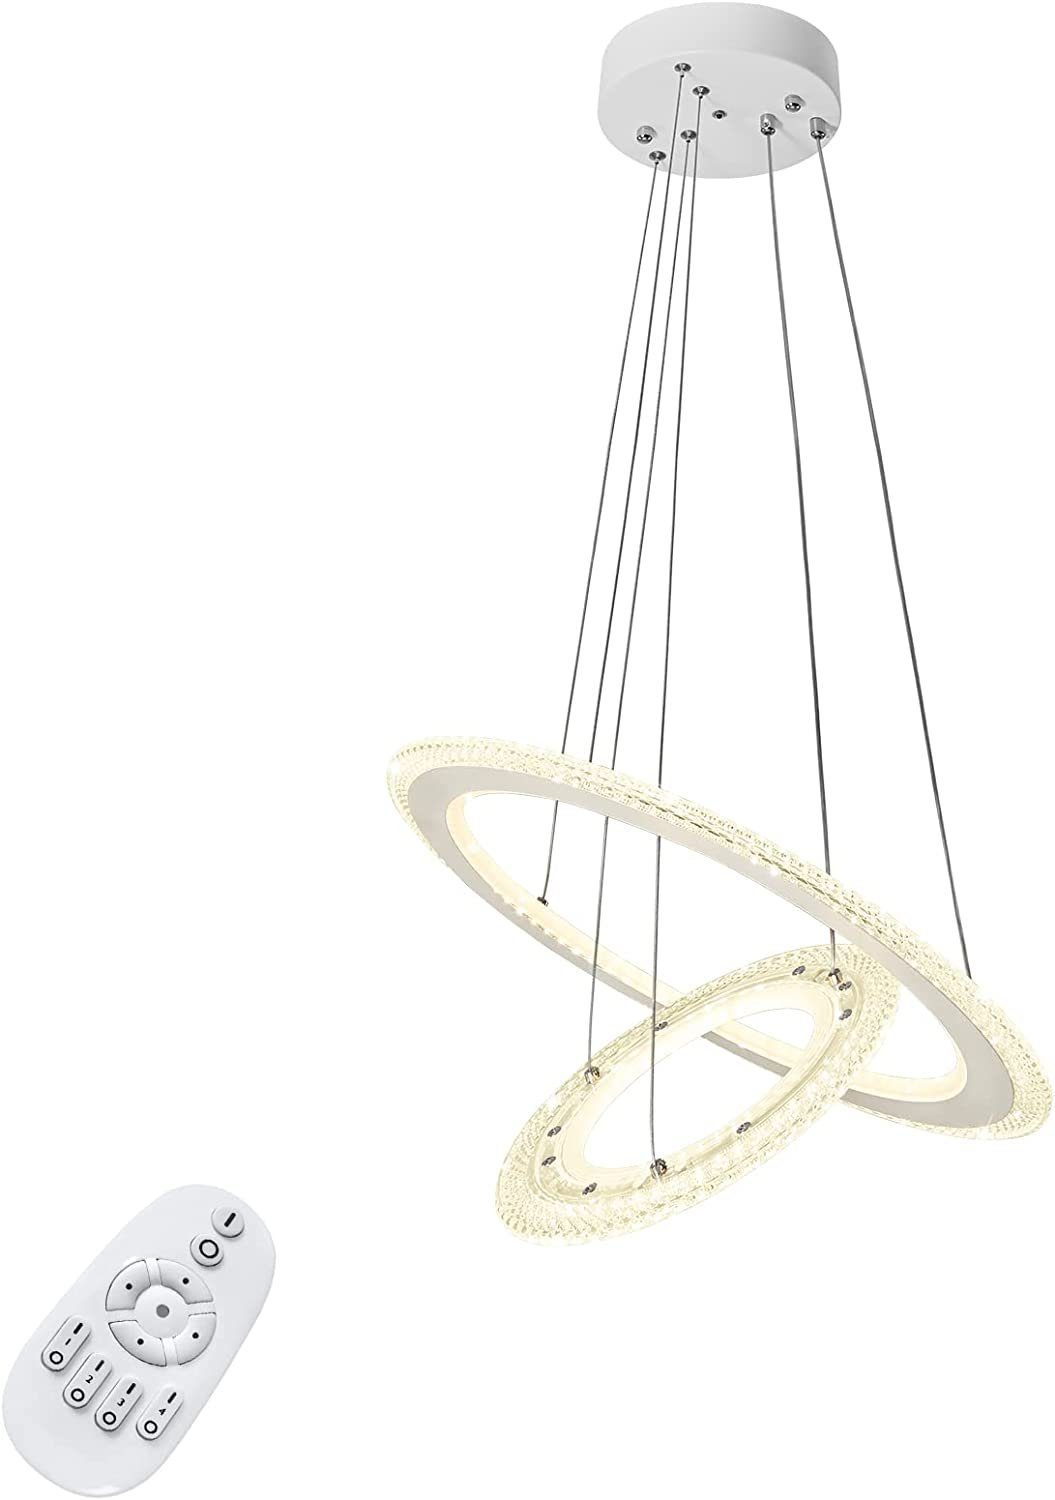 UISEBRT LED Pendelleuchte Hängeleuchte Modern Kristall Kronleuchter Hängelampe Höhenverstellbar, 2/3 Ring Deckenlampe Acryl Leuchte für Wohnzimmer Dimmbar mit Fernbedienung